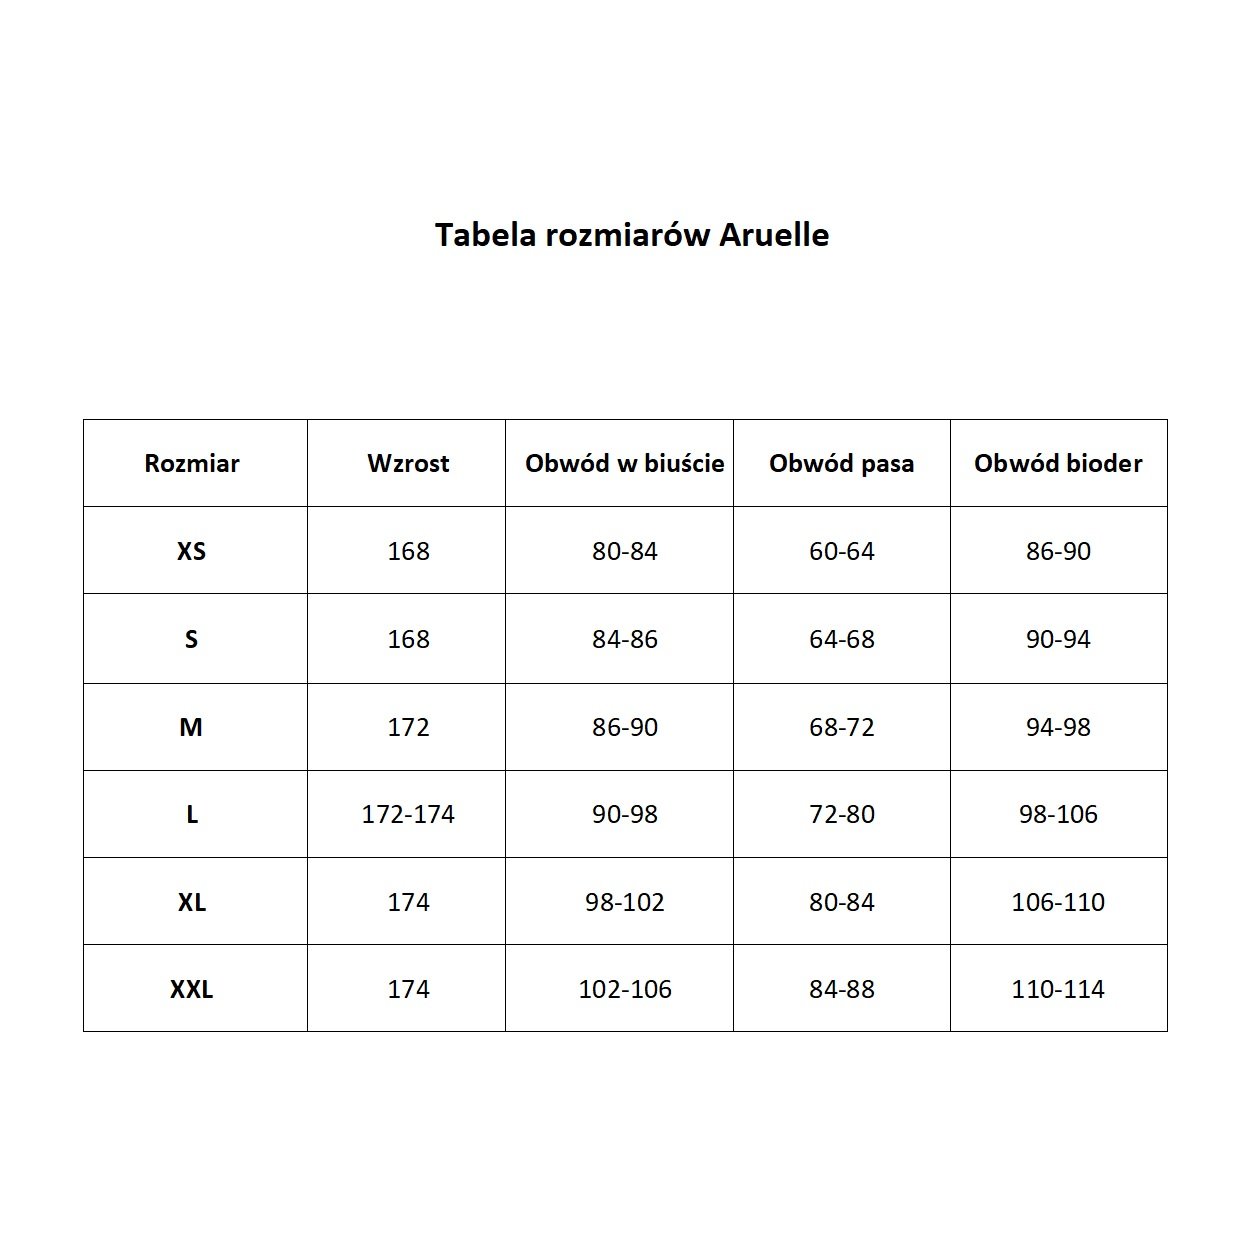 Tabela rozmiarów Aruelle